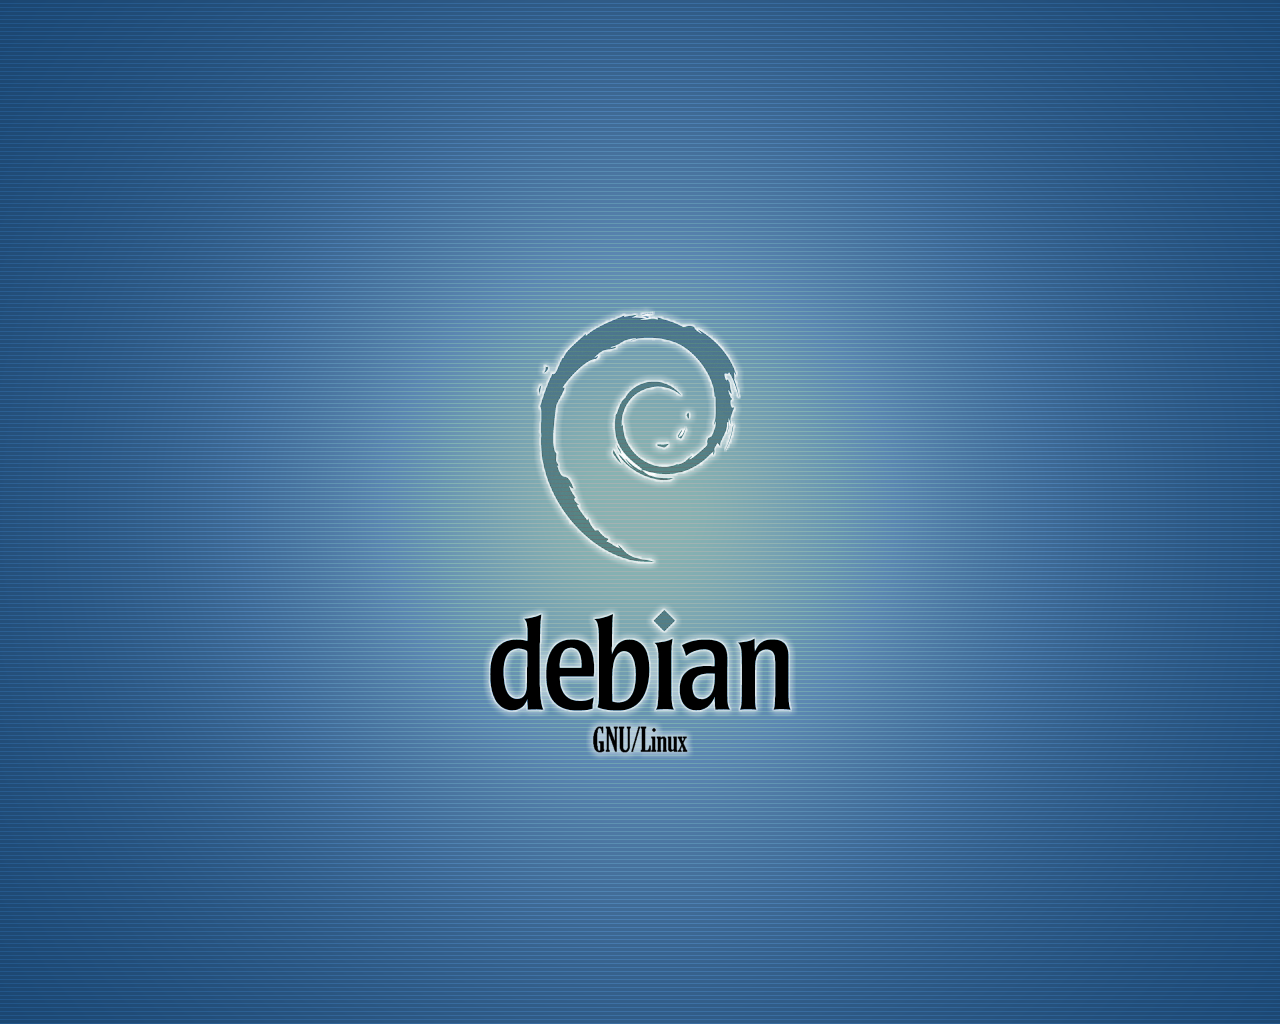 Https debian org. Linux дебиан. ОС Debian. Линукс Debian. Linux Debian рабочий стол.